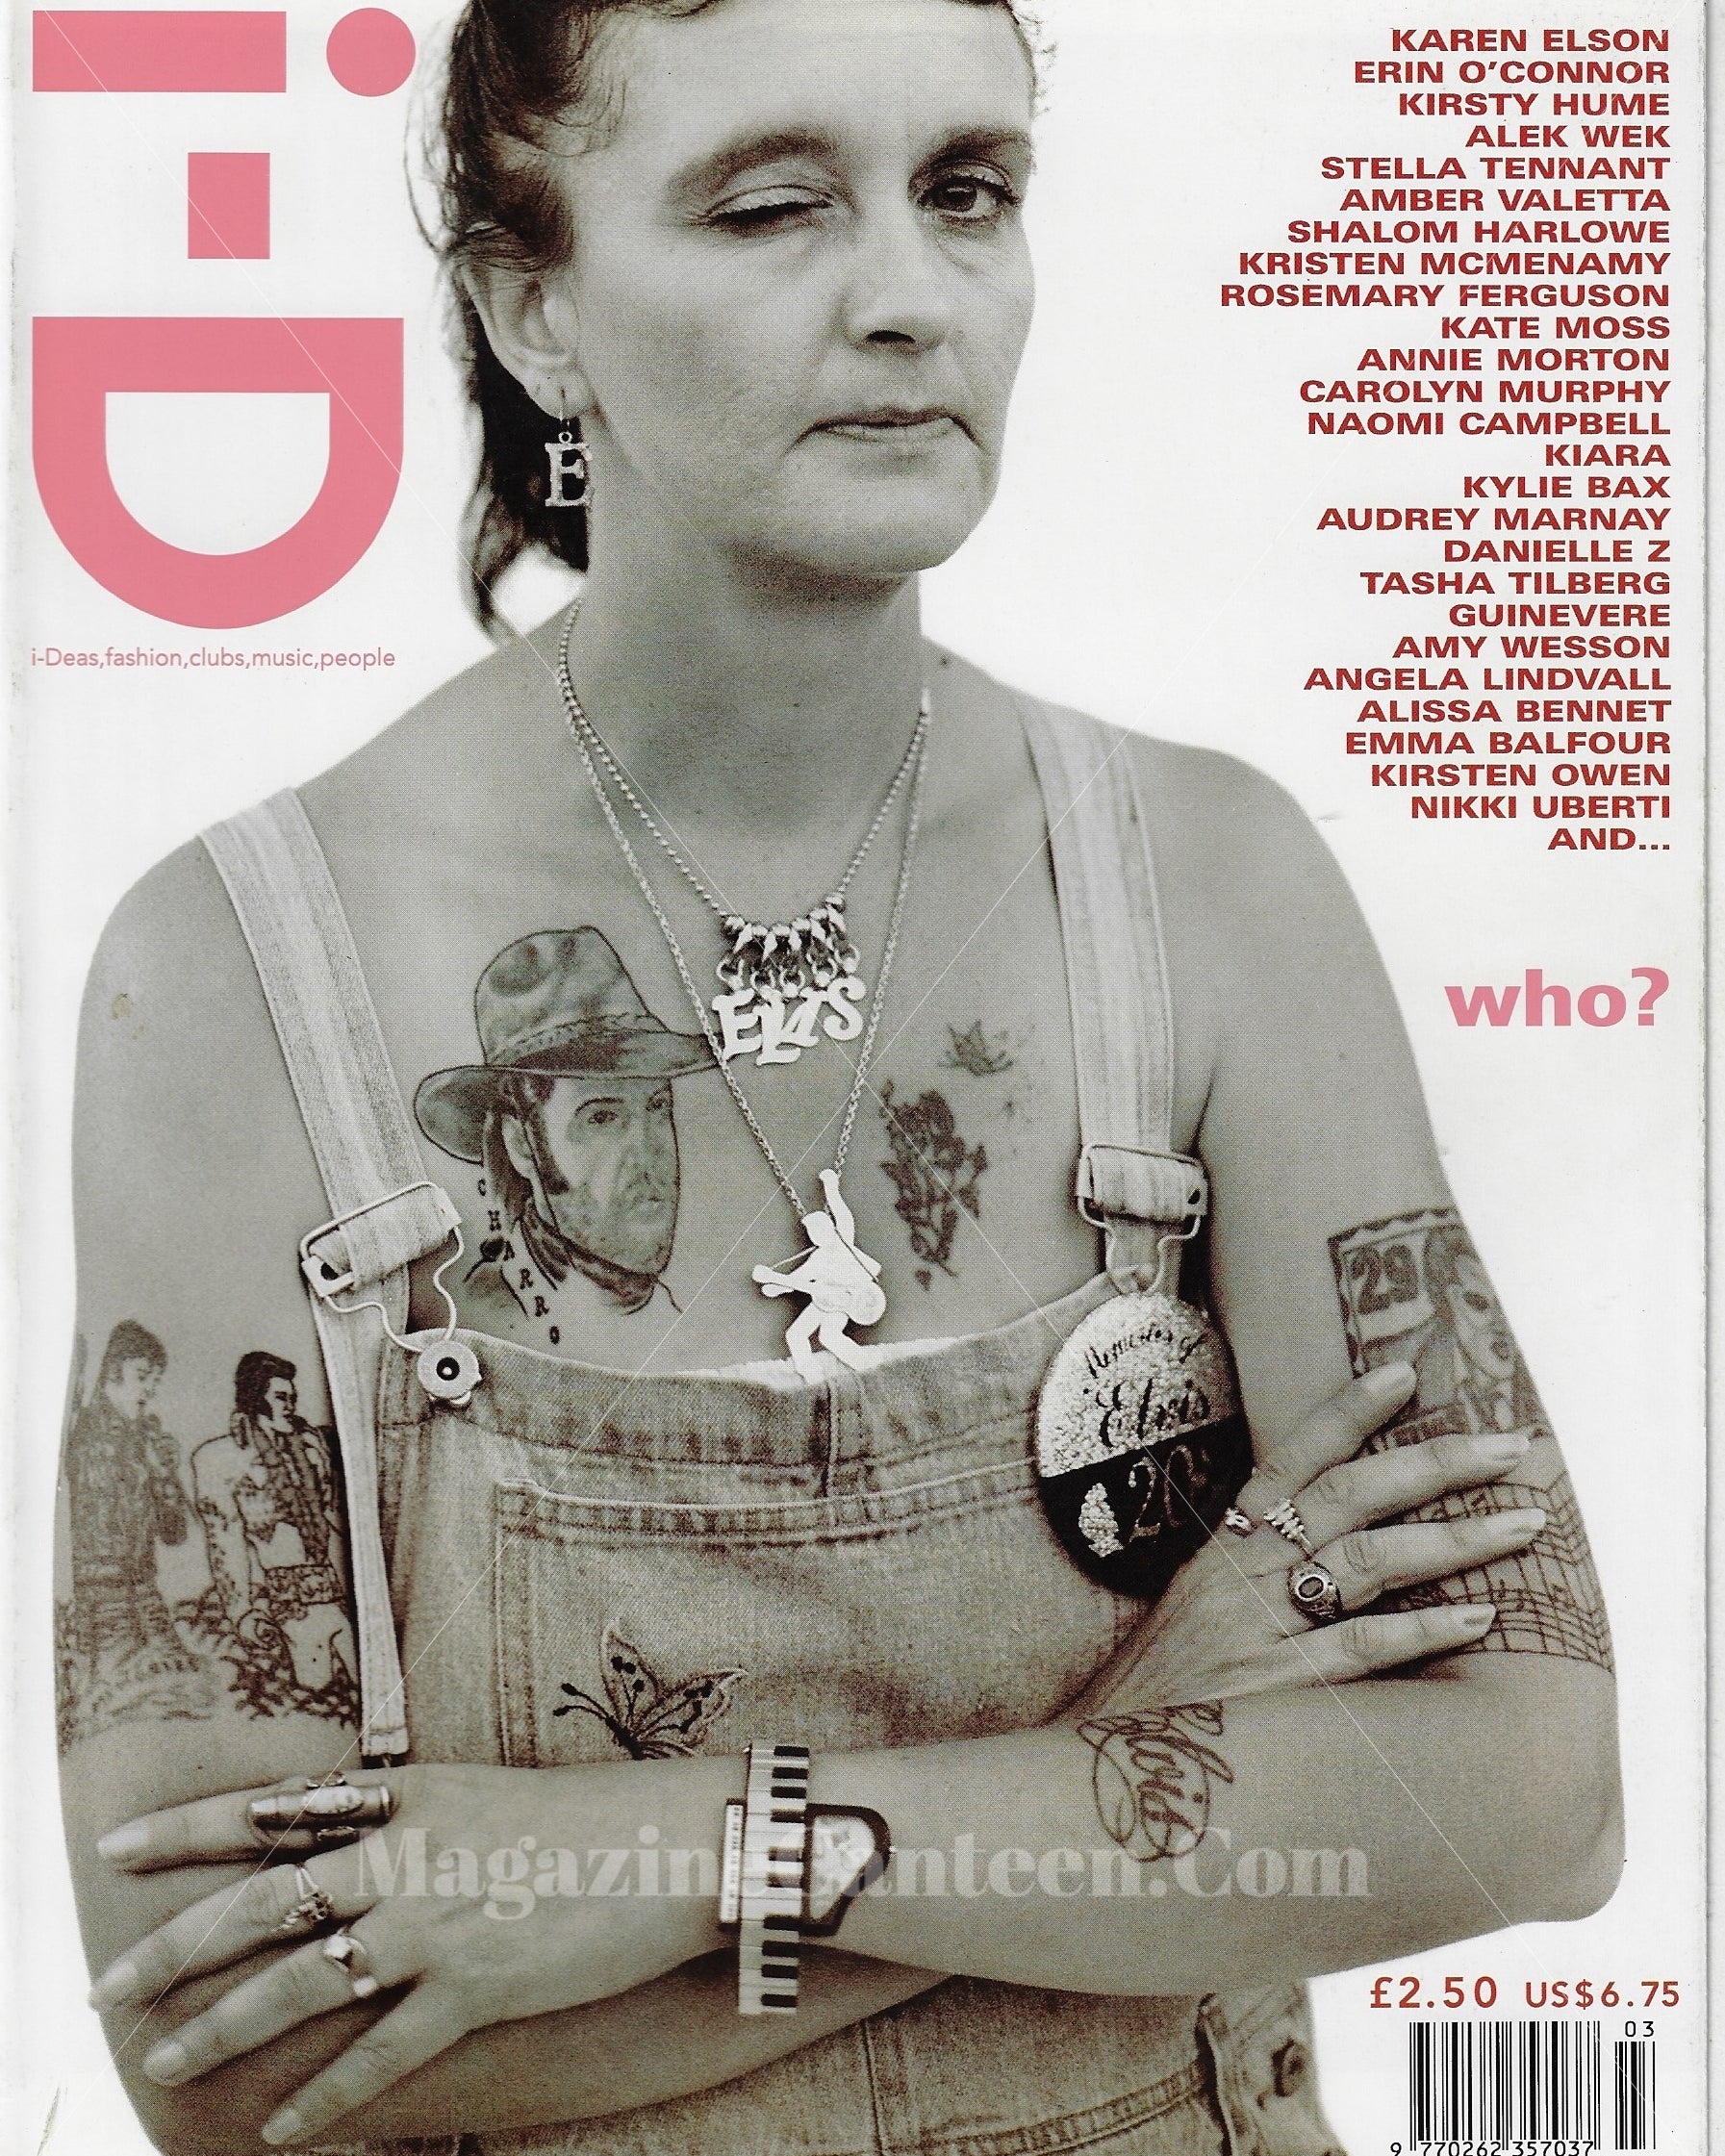 I-D Magazine 173 - The Ego issue 1998